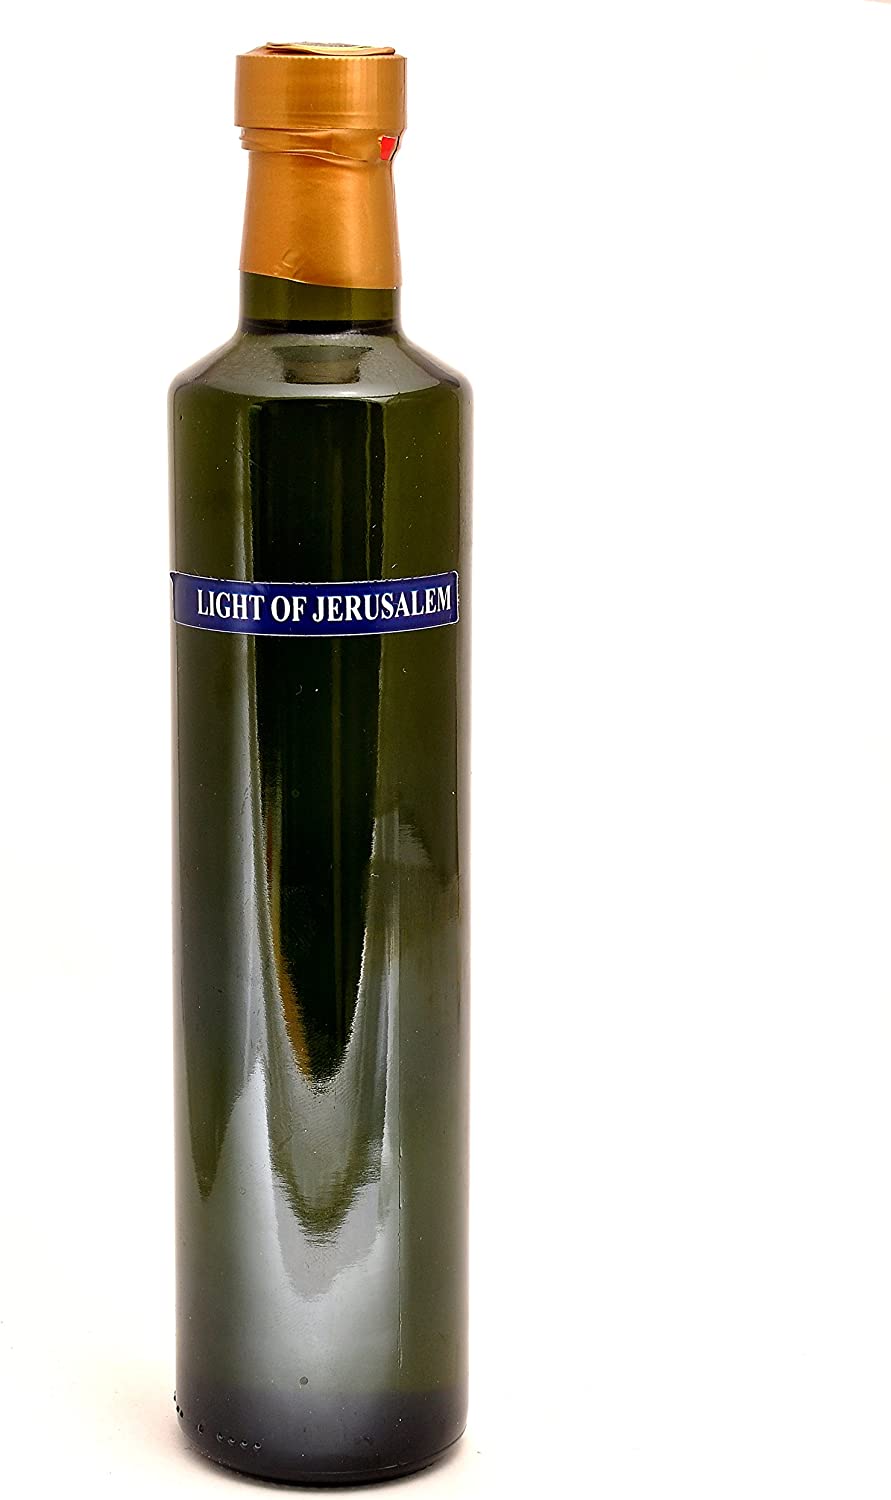 Light Of Jerusalem Anointing Oil 500 ml. - 17 fl. oz. Bottle From Holyland Jerusalem